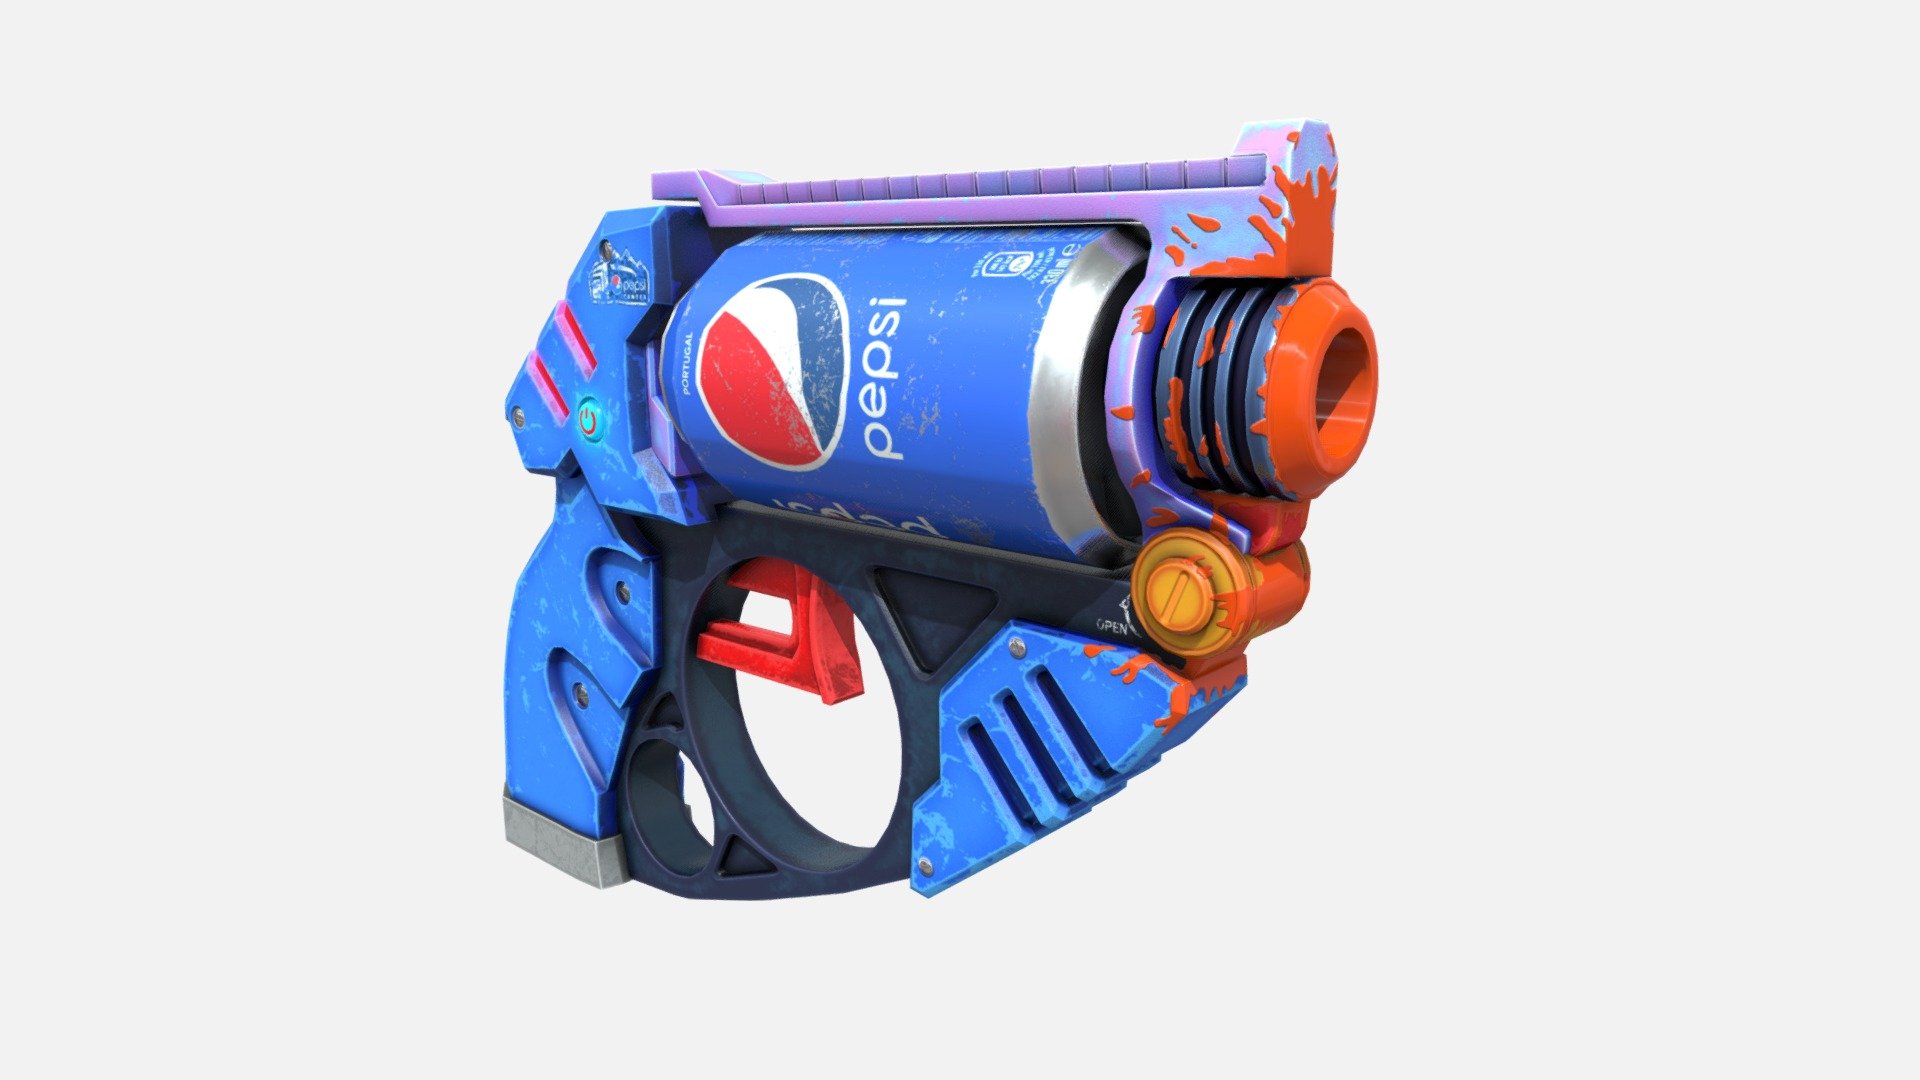 Referance:https://www.artstation.com/artwork/48za3k - Pepsi Gun - 3D model by yasinguclu 3d model